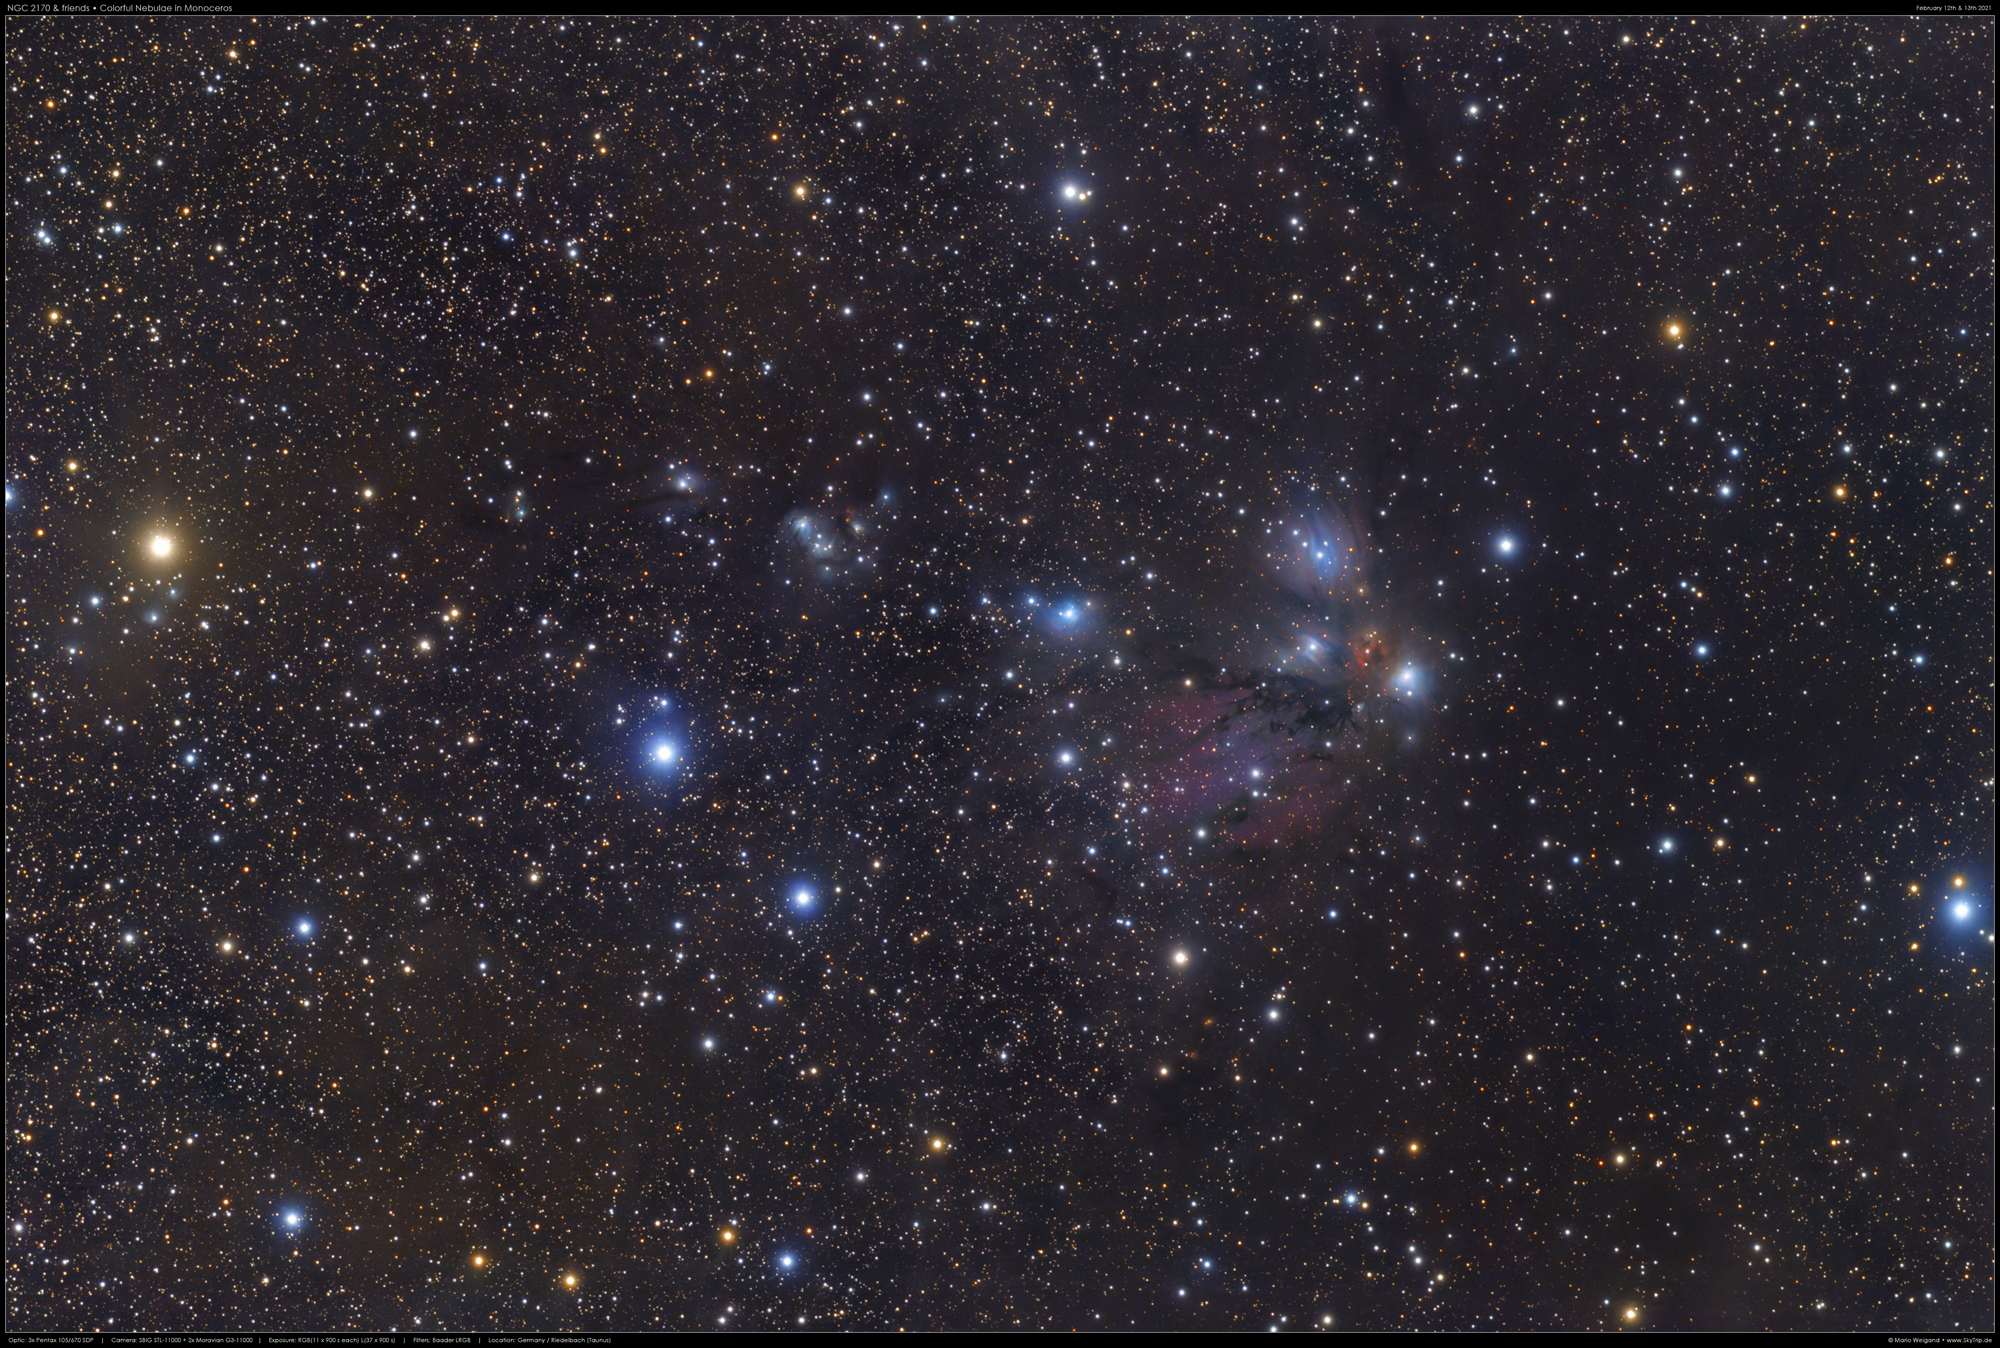 NGC 2170 & viel mehr